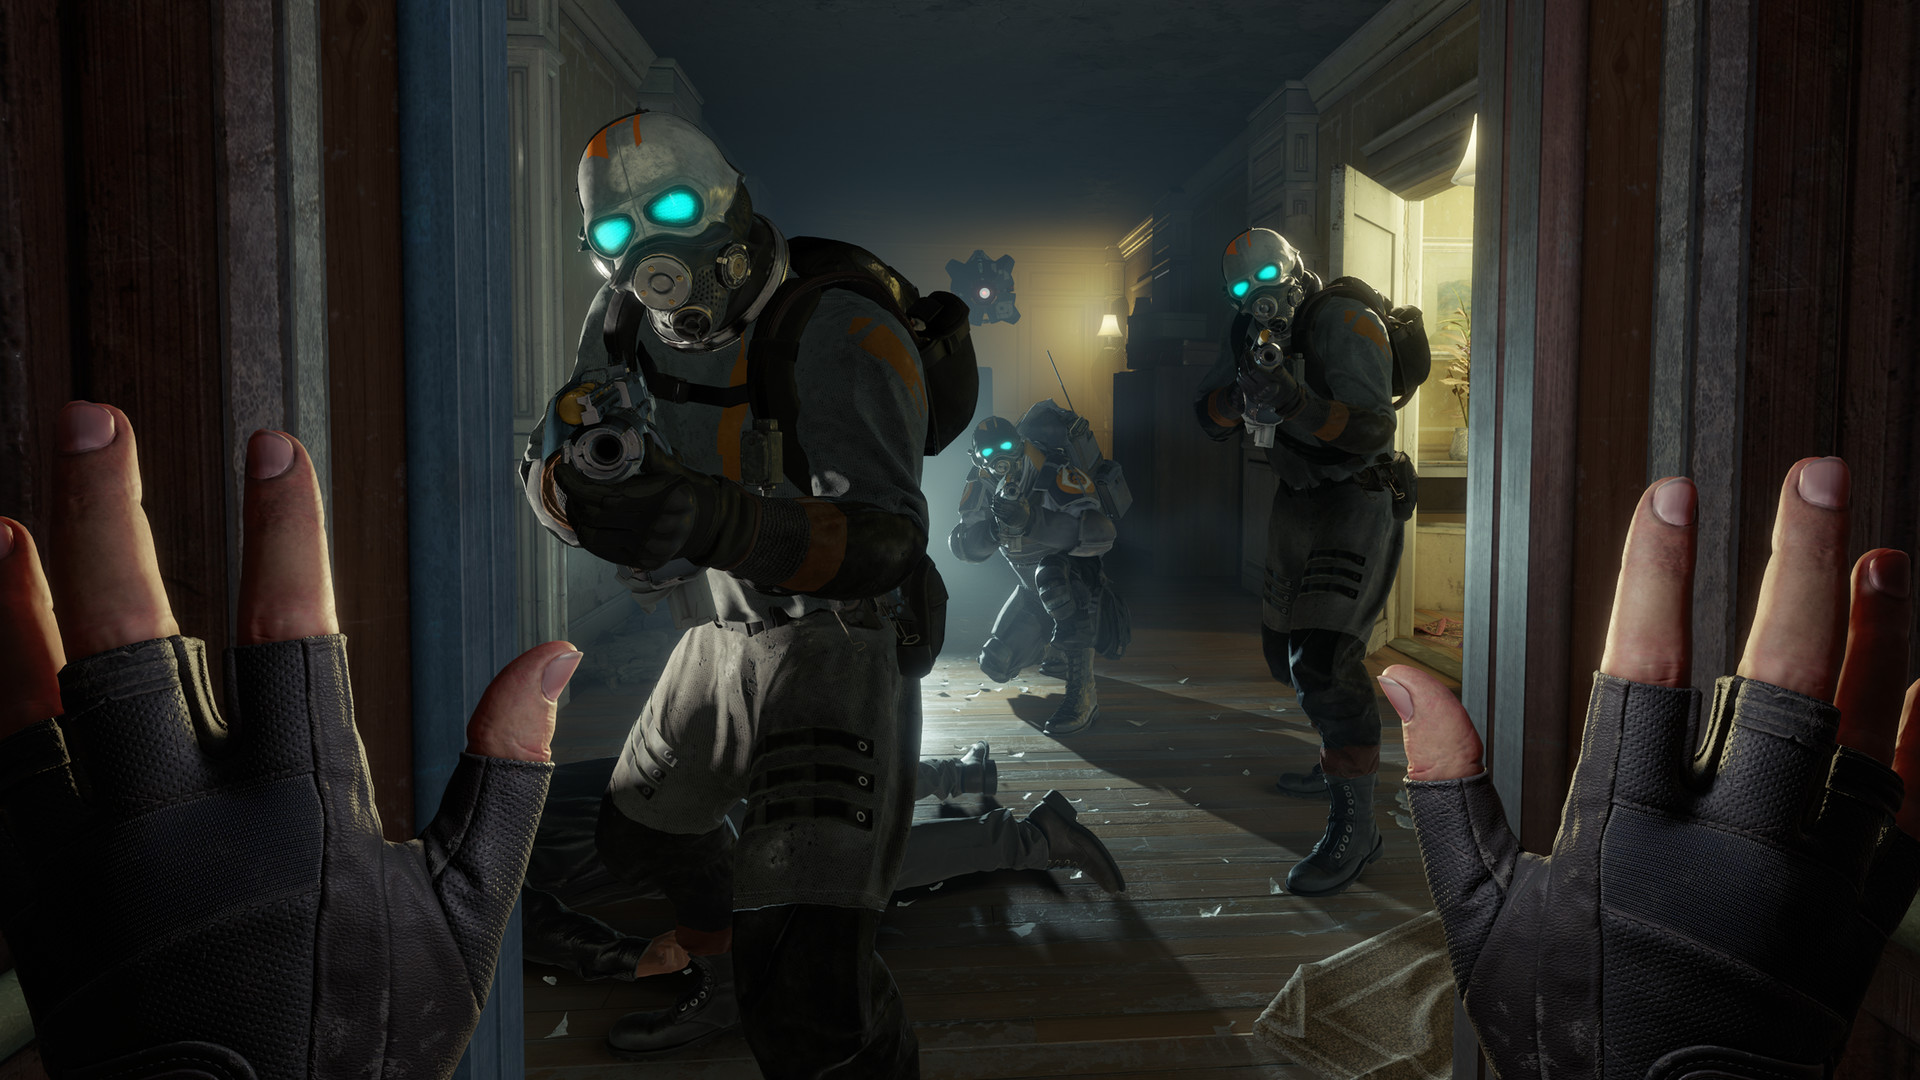 Protagonist in Half-Life: Alyx encountering enemies